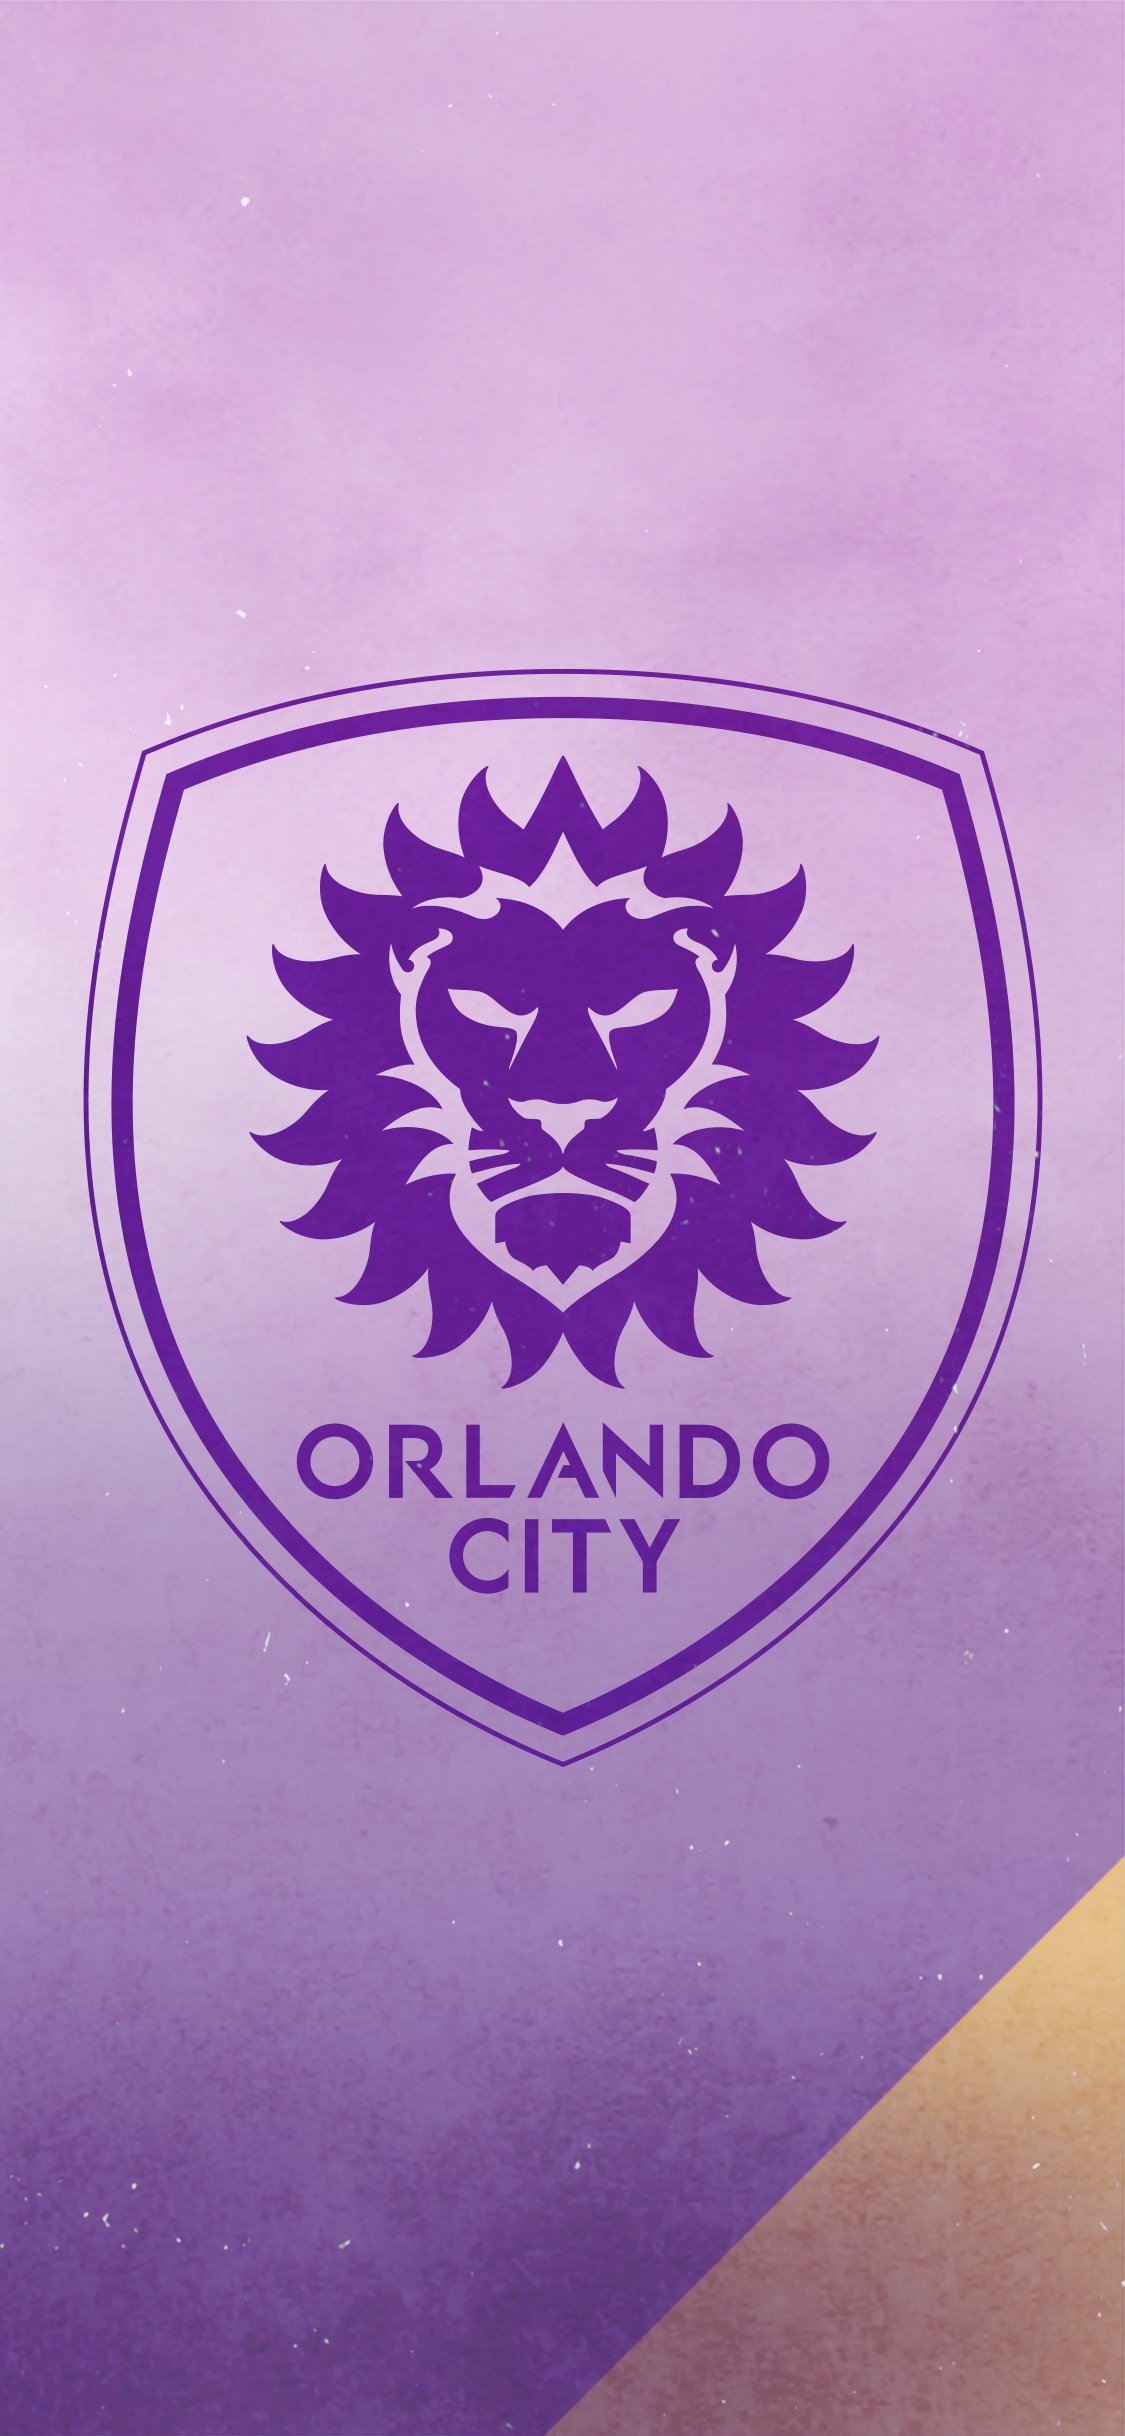 Downloads. Orlando City Soccer Club